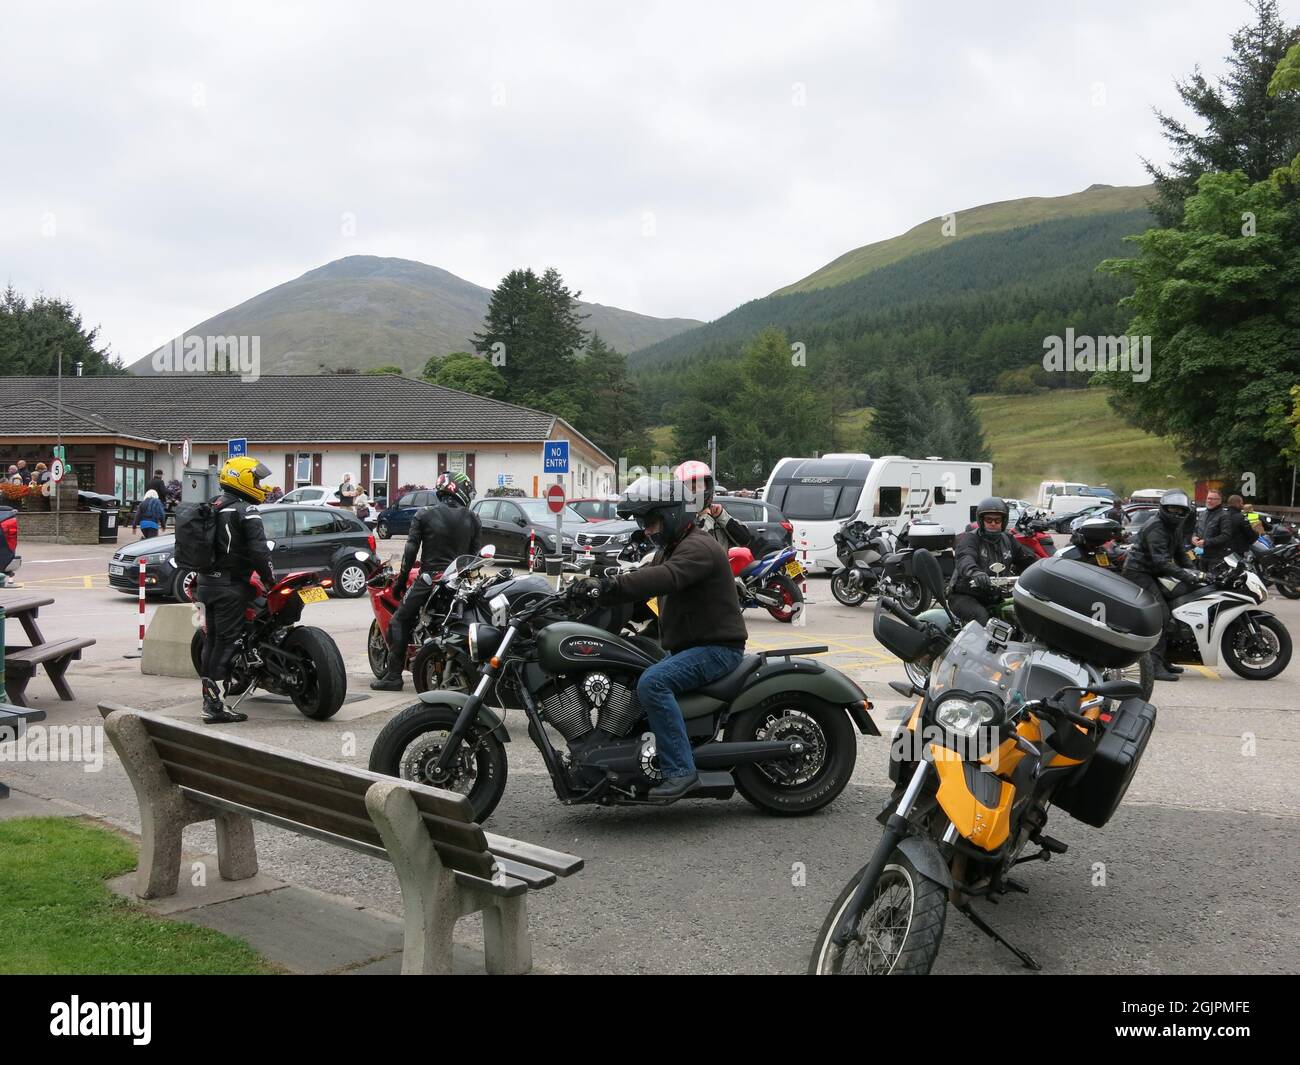 L'arrêt Green Willy Stop à Tyndrum sur l'A82 est une station de service familiale populaire pour les voyageurs dans les Highlands, en particulier les motocyclistes. Banque D'Images